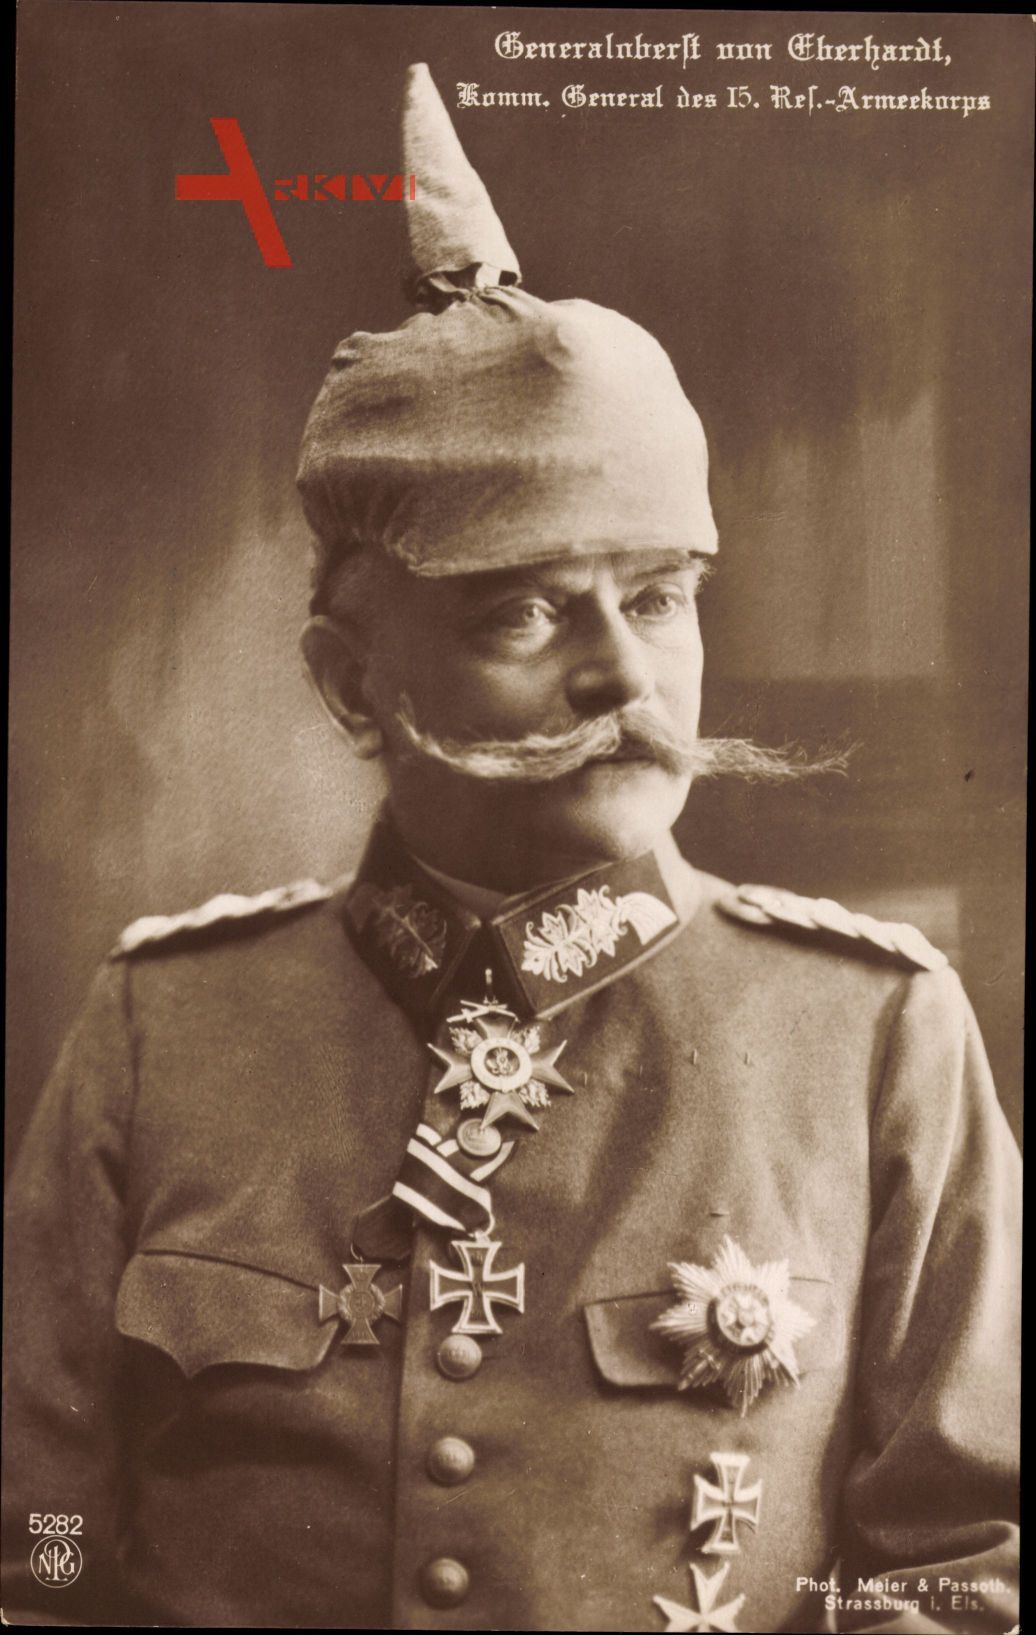 General Magnus von Eberhardt, 15. Res. Armeekorps, NPG 5282